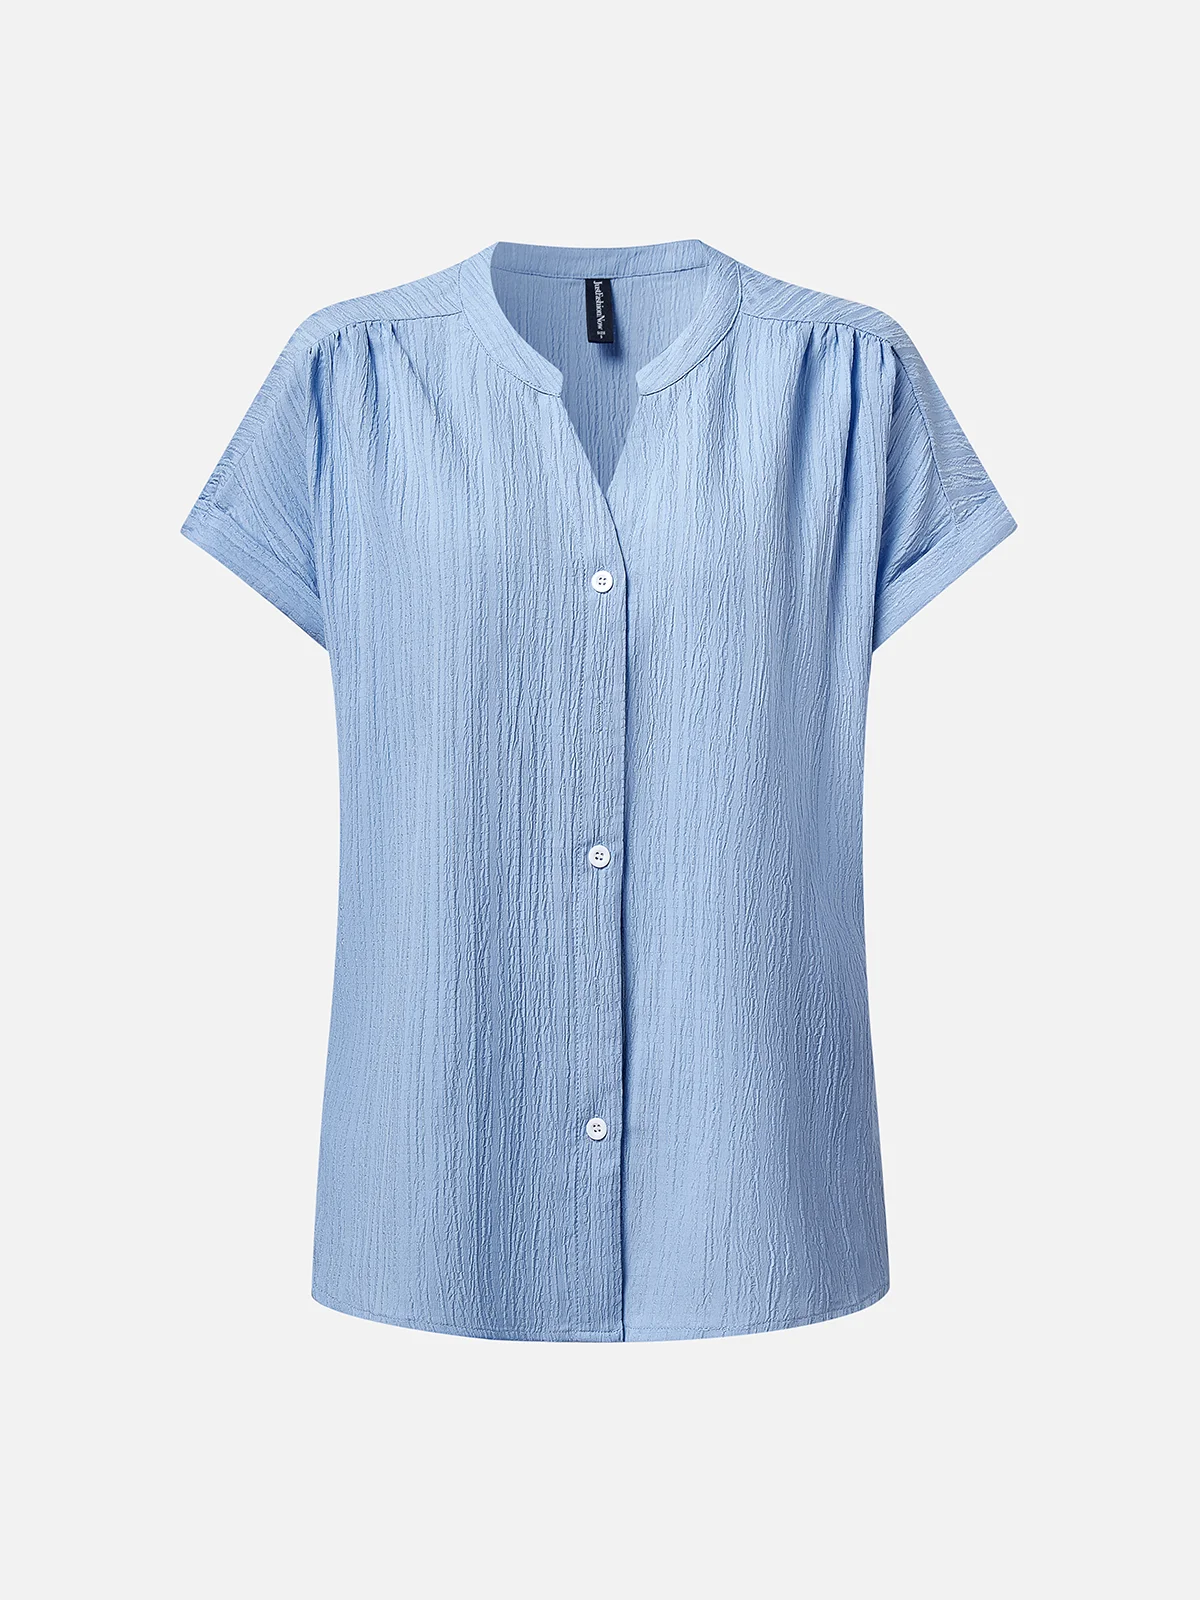 Damen Geknöpft Weit Sommer Bluse Unifarben V-Ausschnitt Shirts